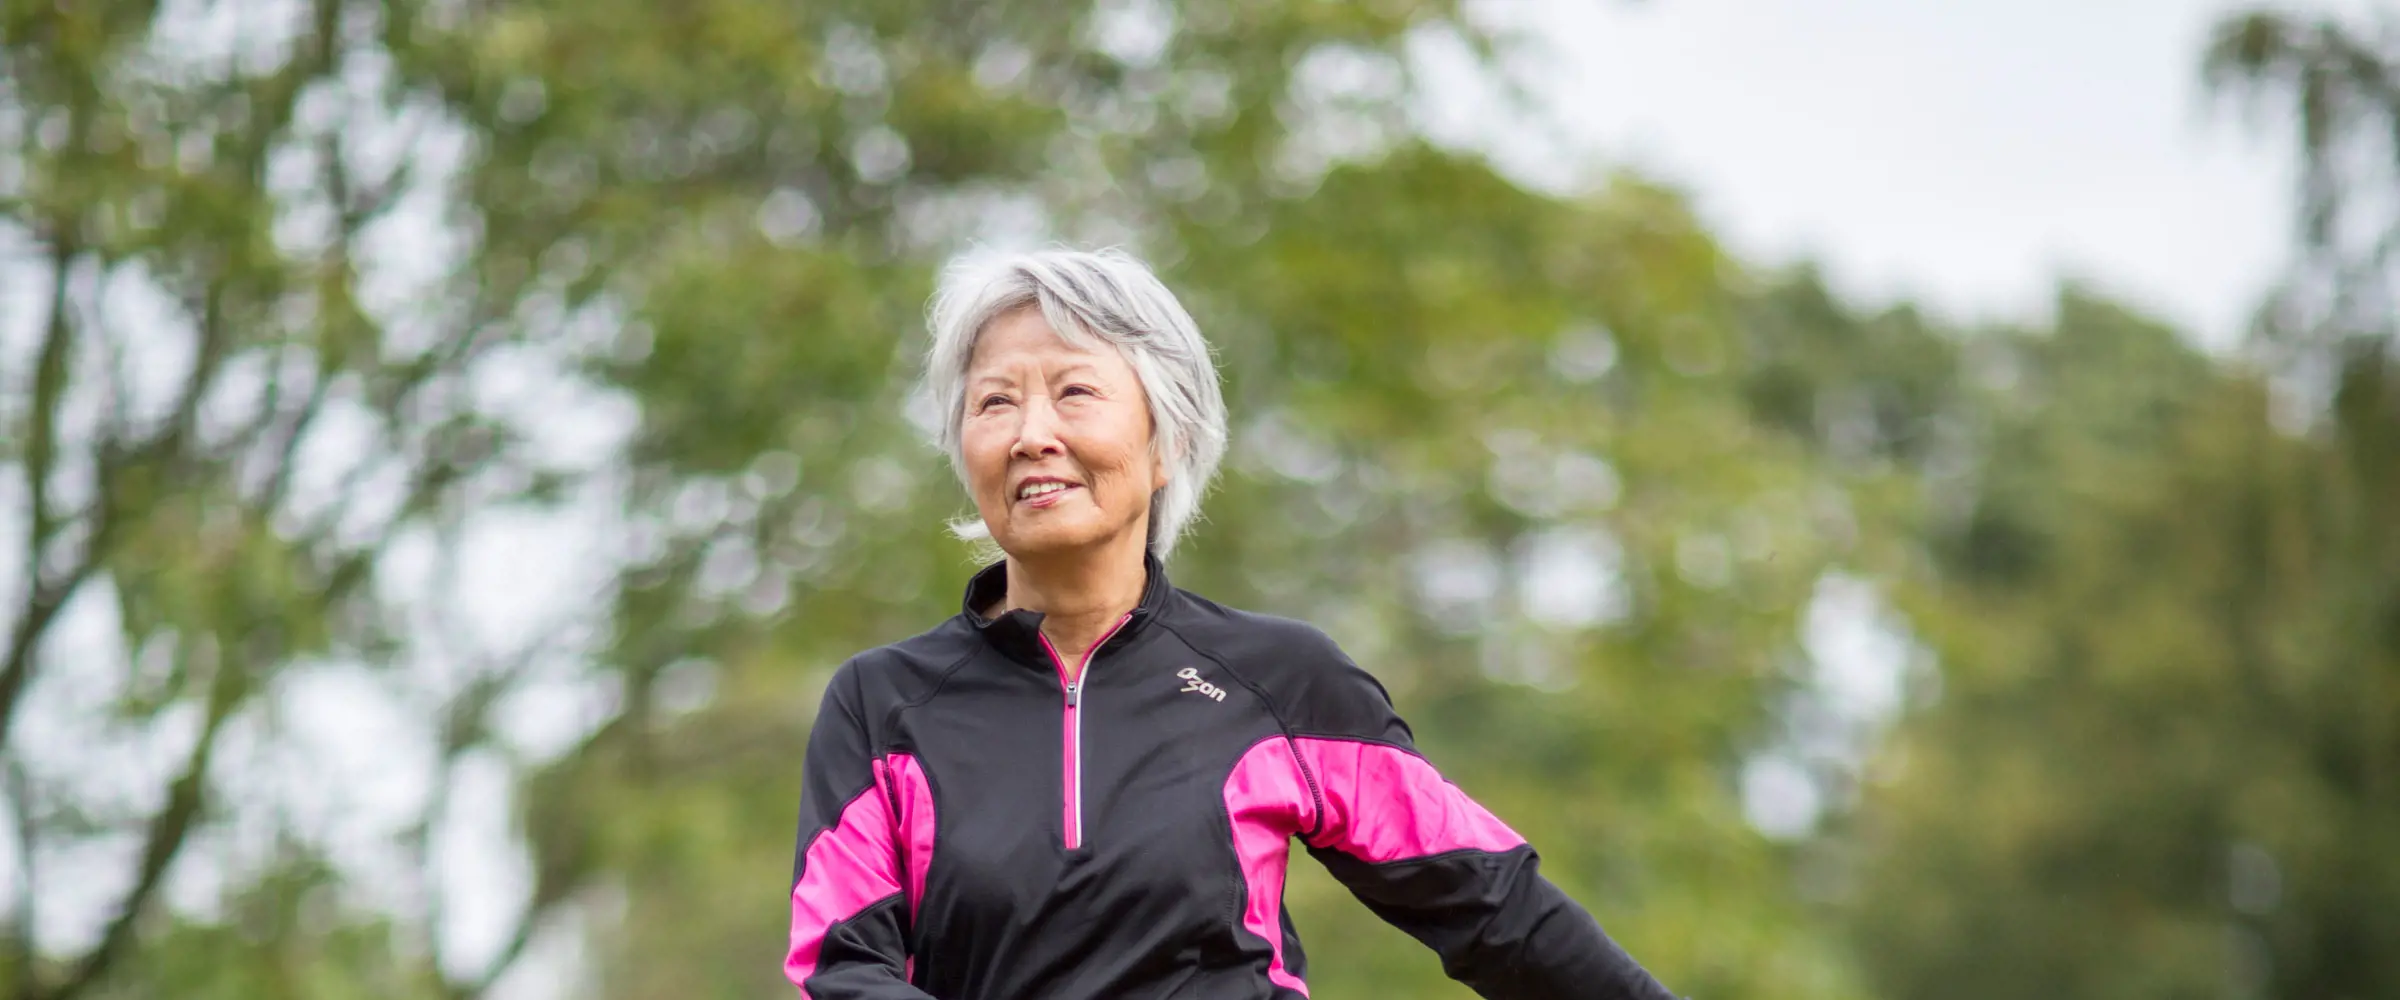 Mulher de meia-idade treinando para recuperar massa muscular